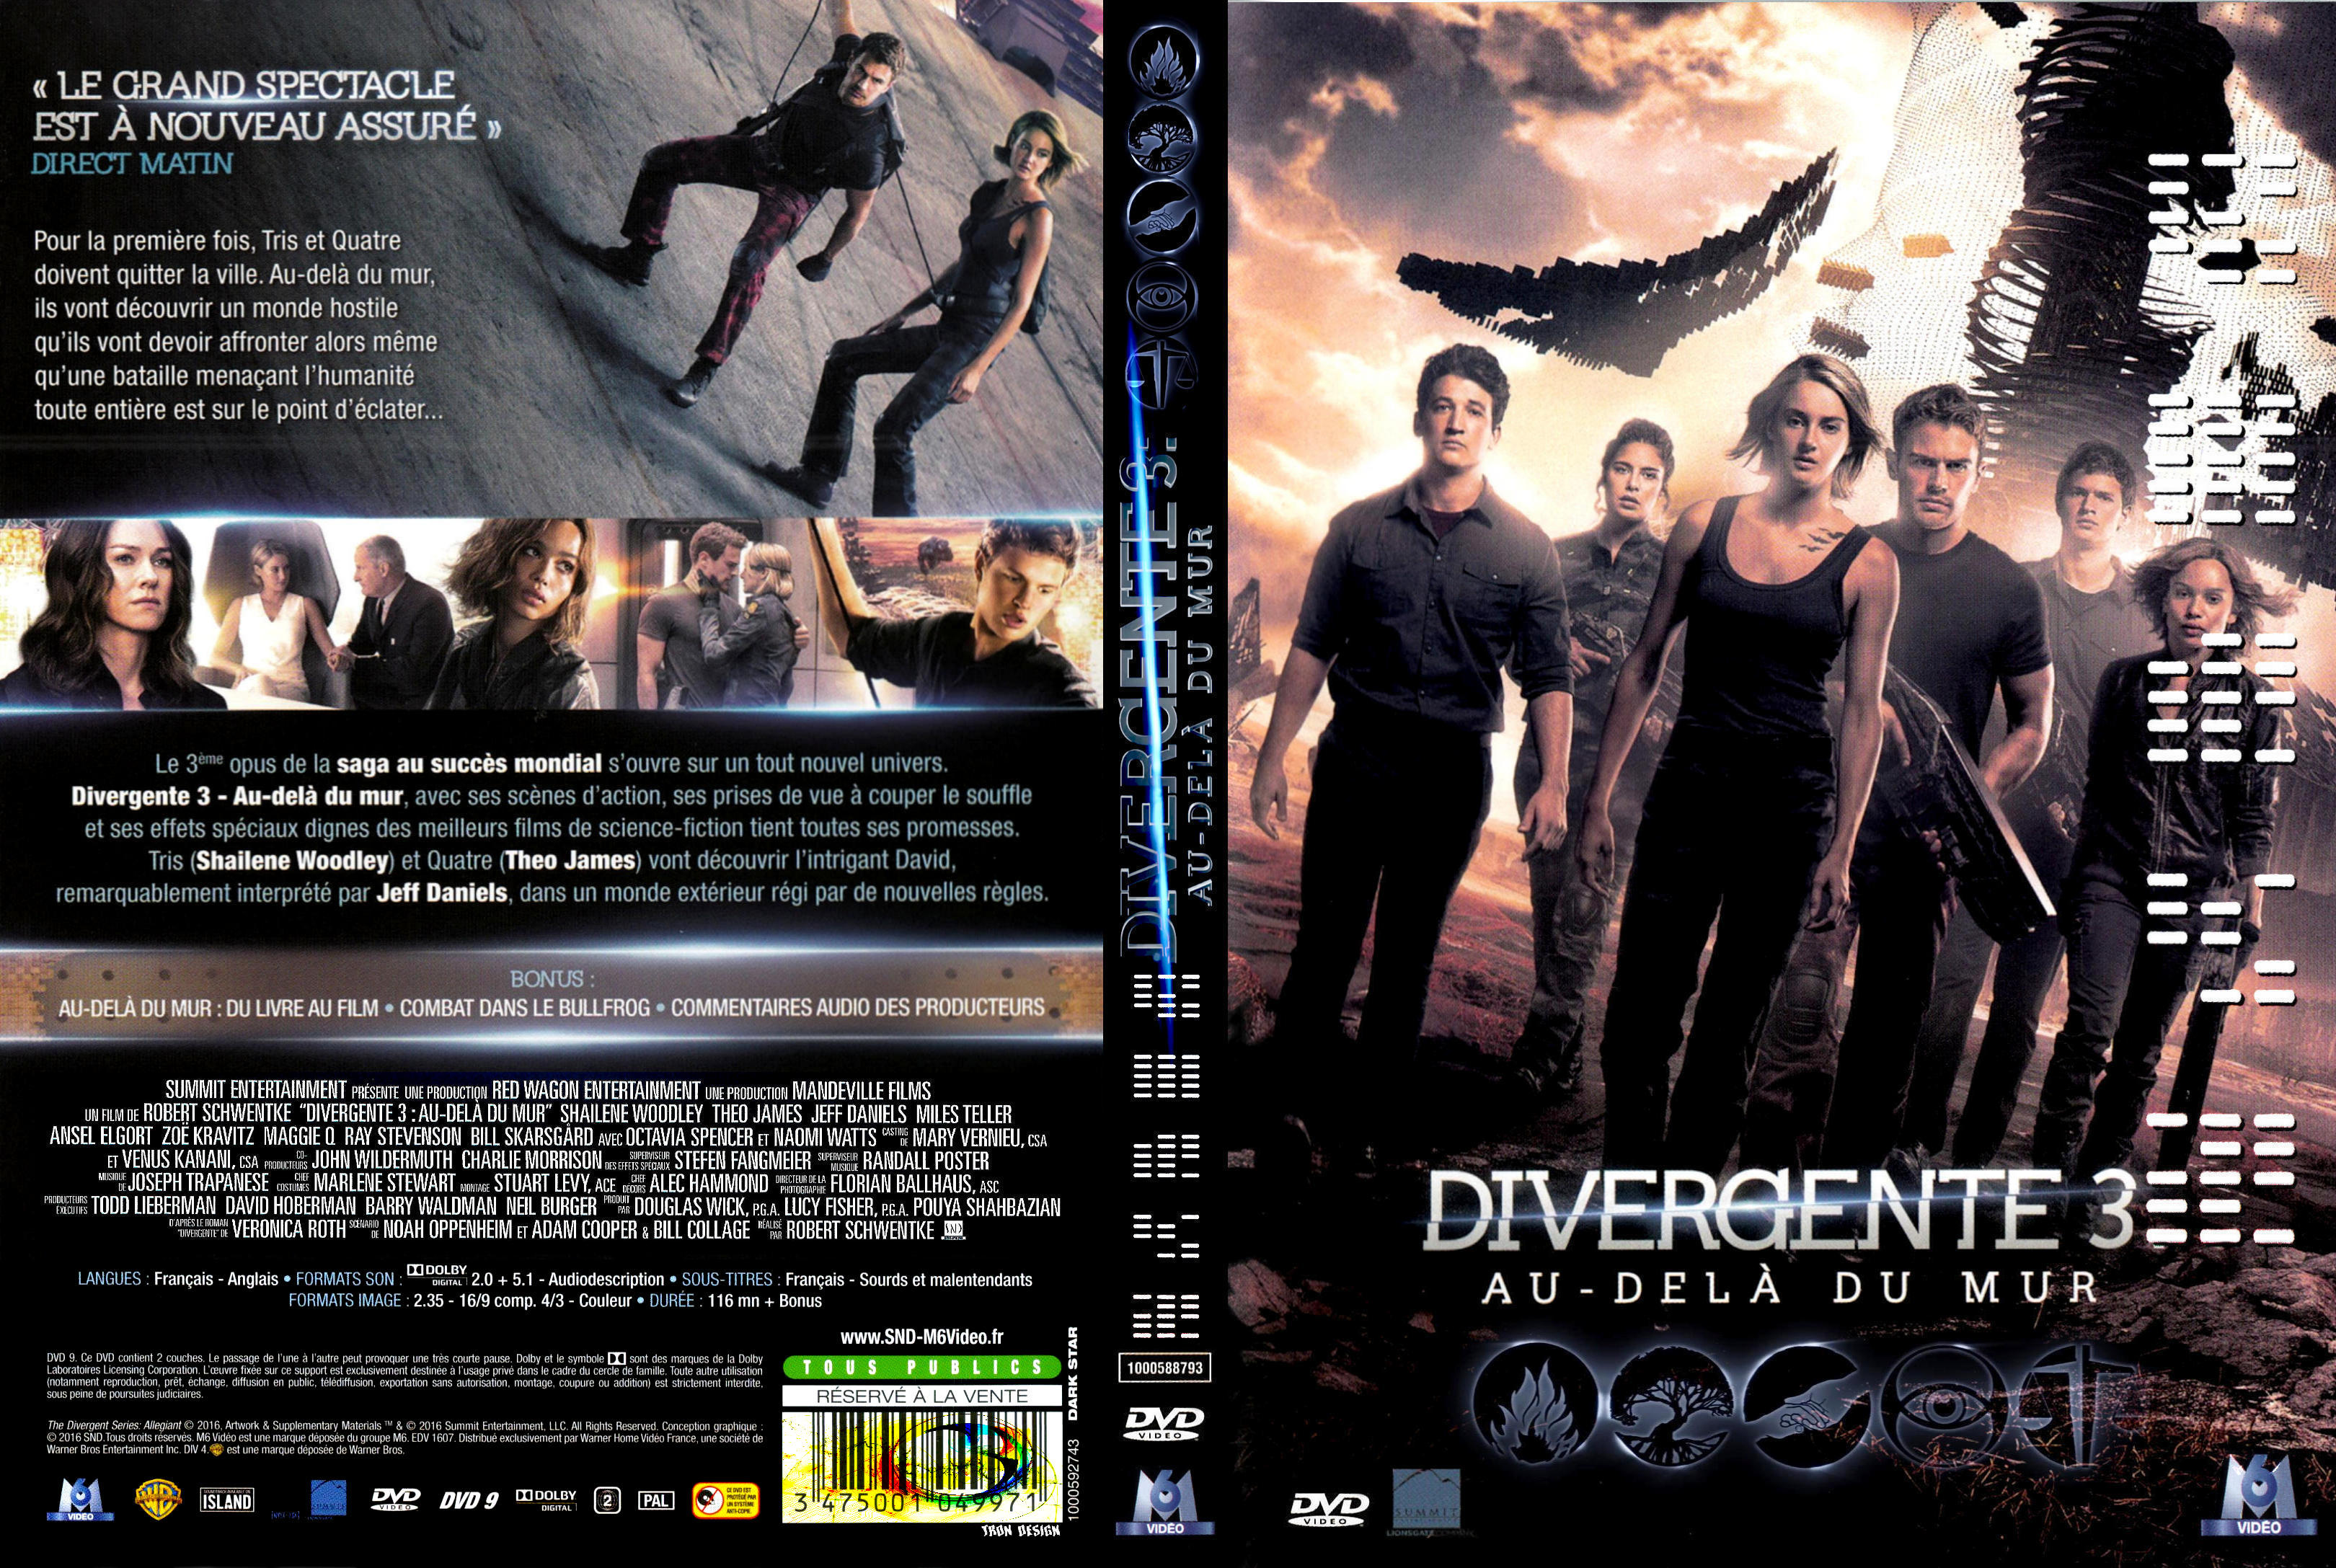 Jaquette DVD Divergente 3 custom